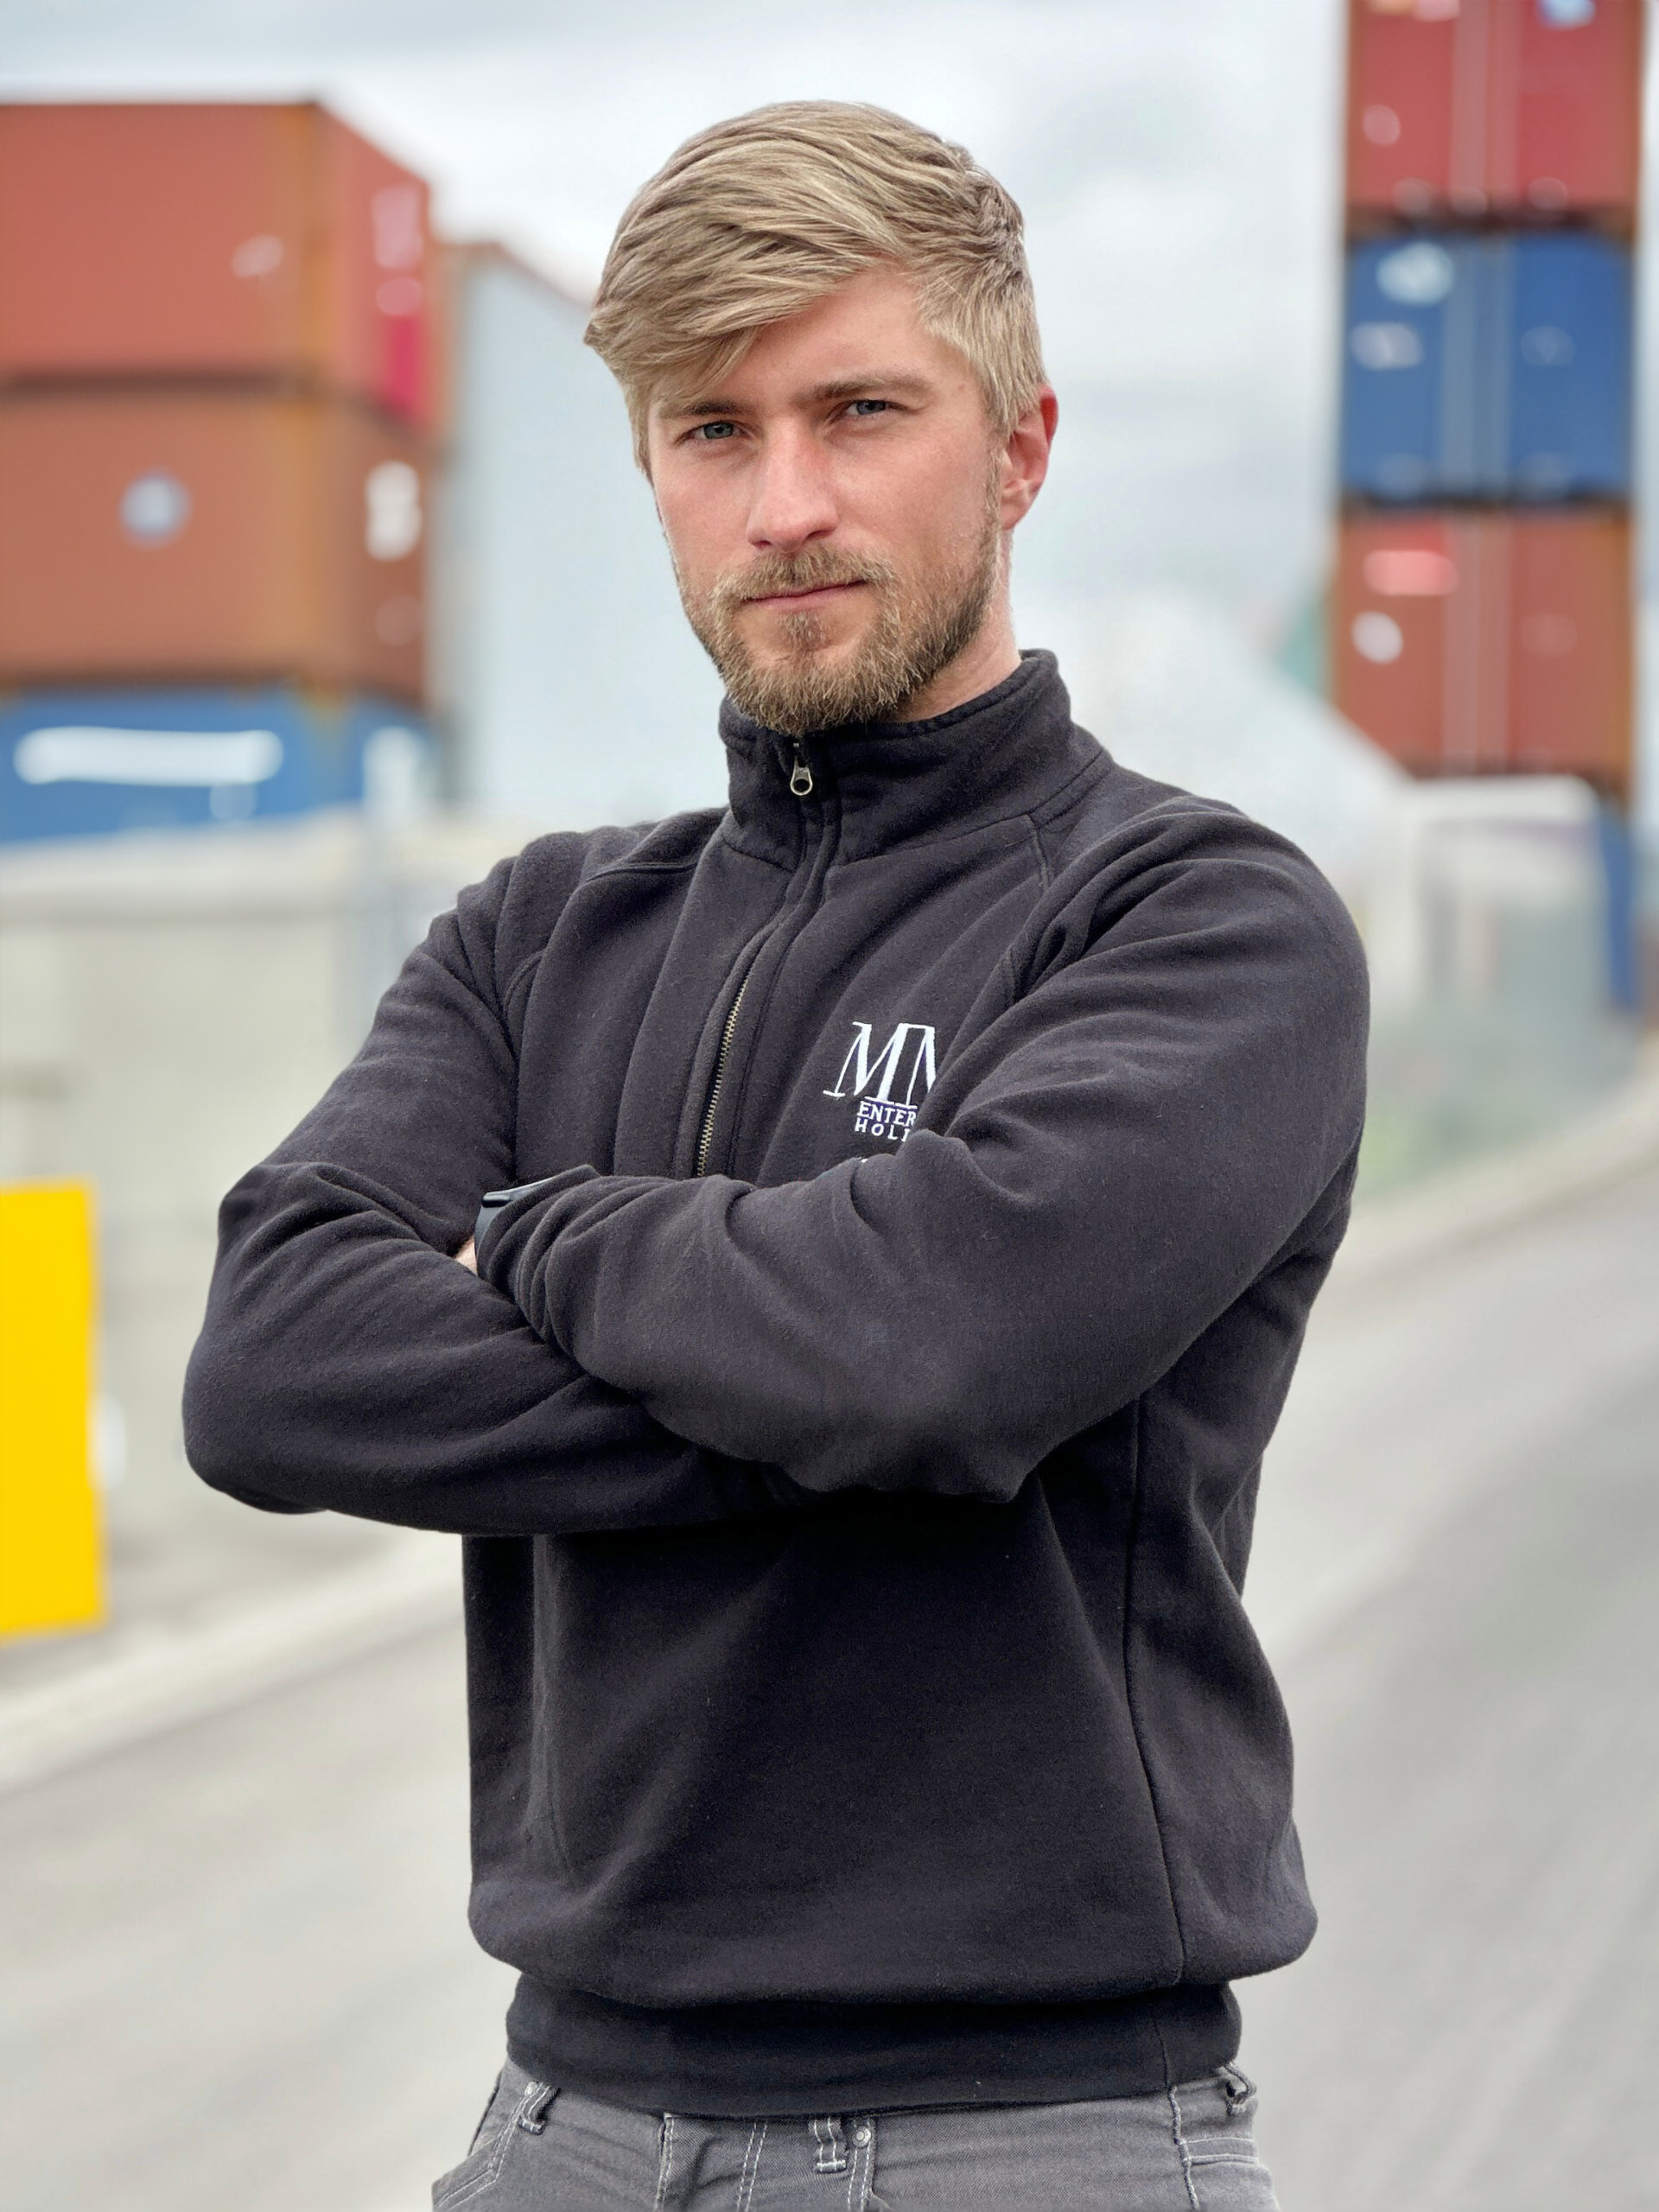 Laxlog Founder Max Röder